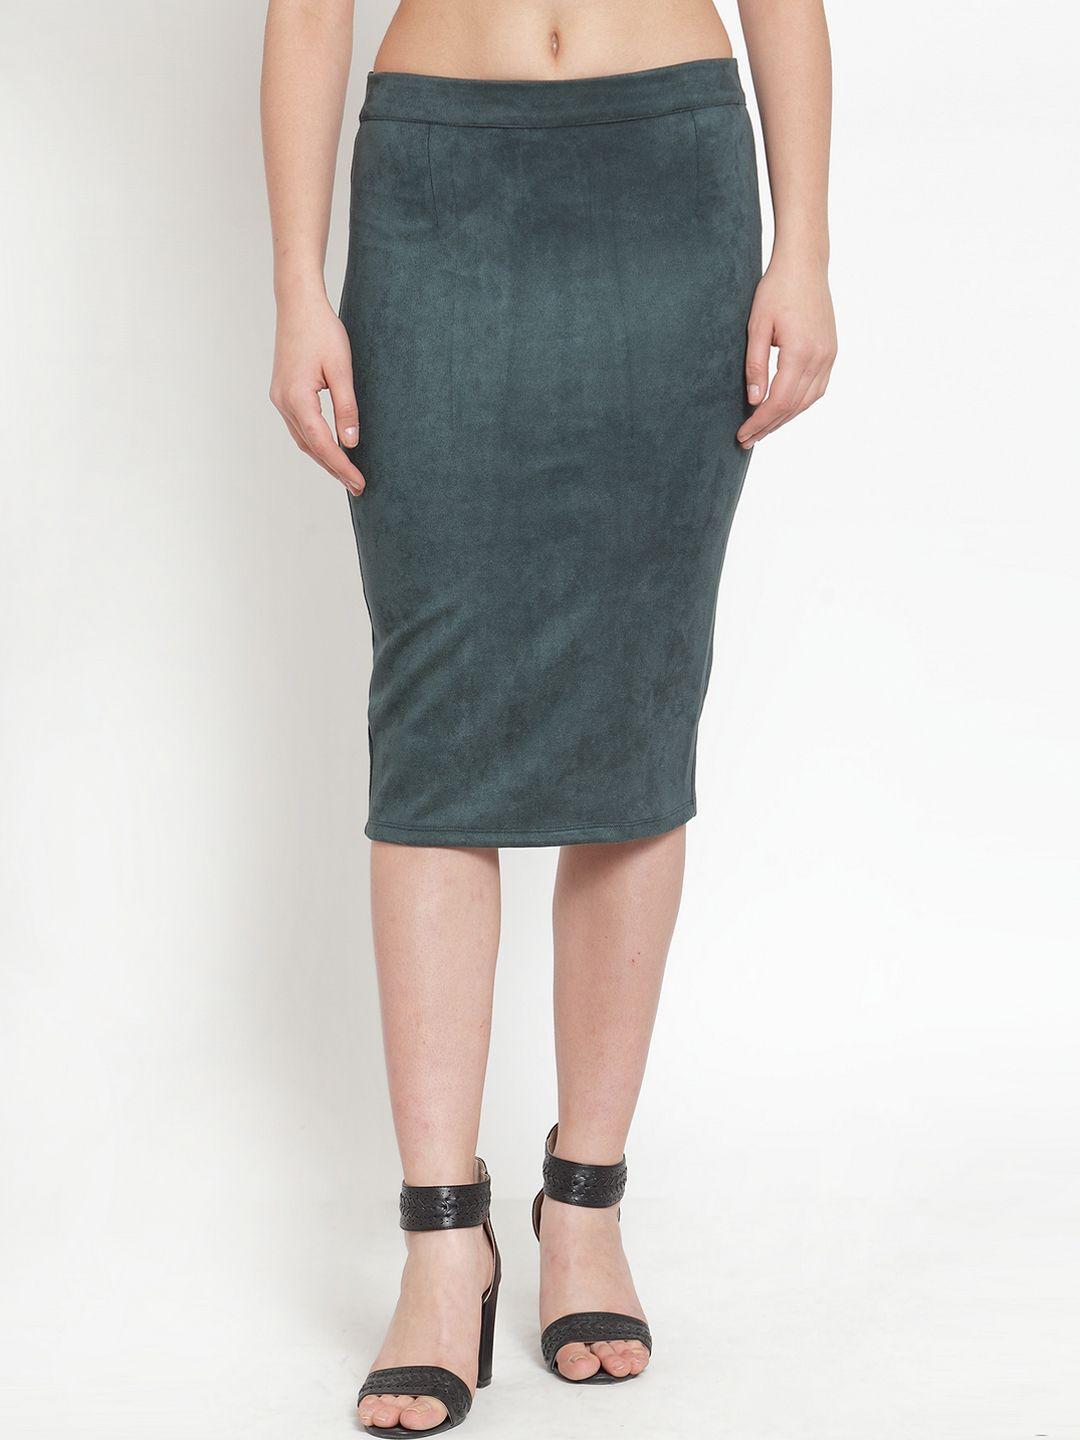 kassually women green solid straight knee-length skirt